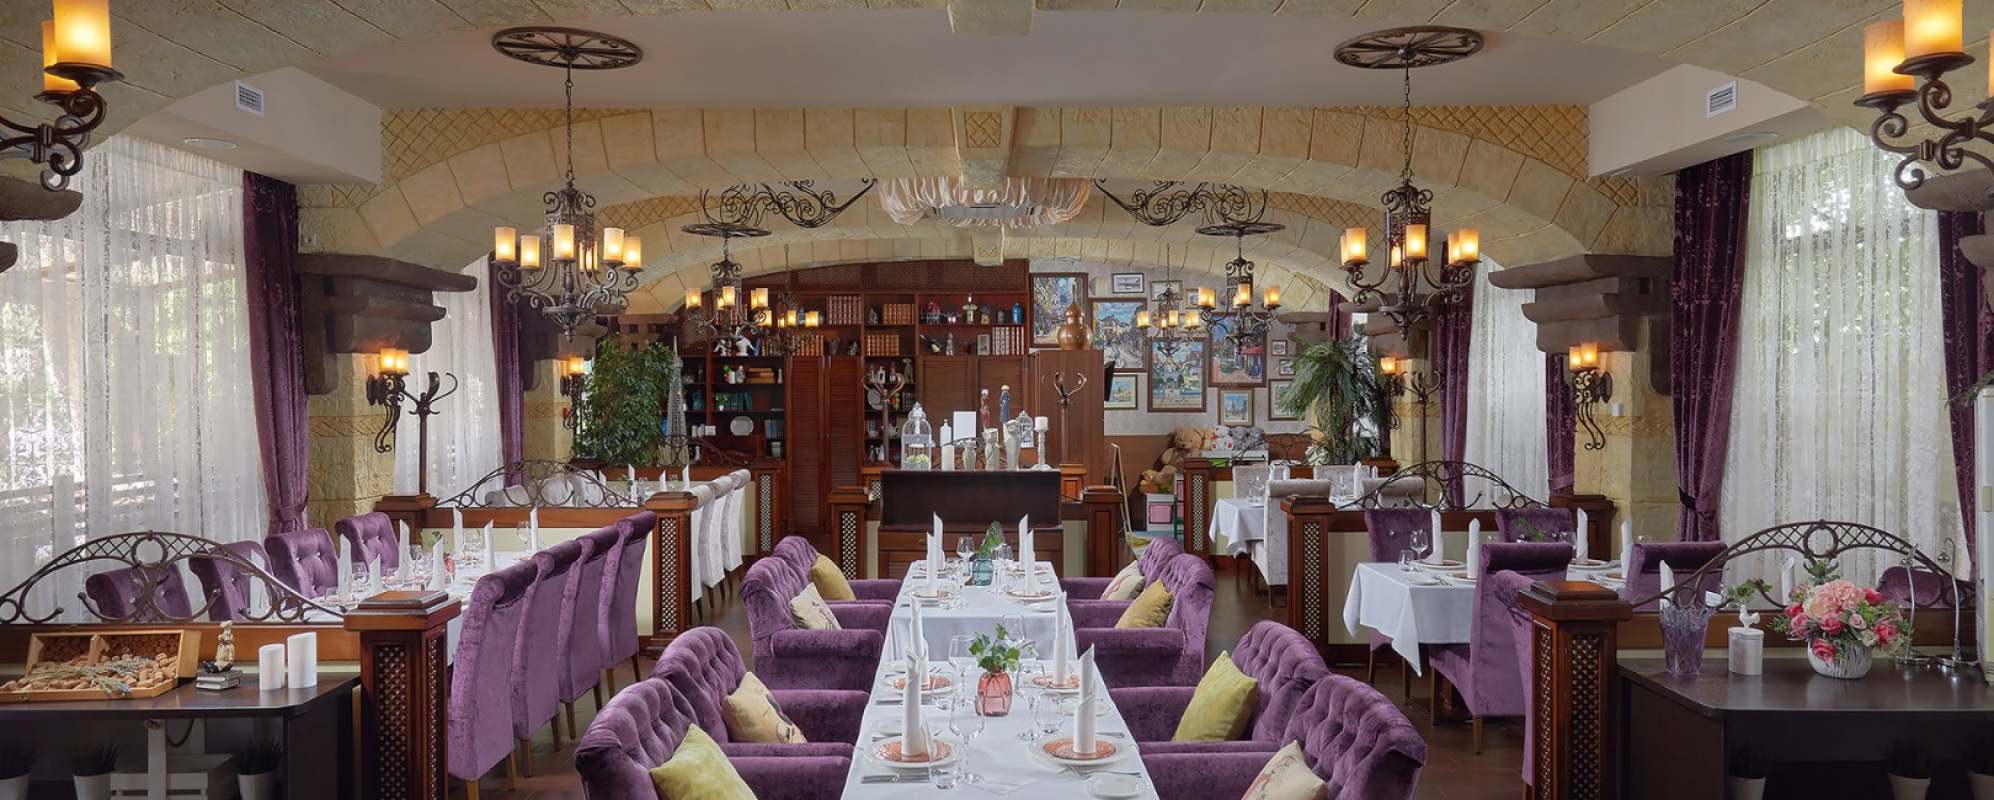 Фотографии банкетного зала Гастрономический ресторан Saint Michel